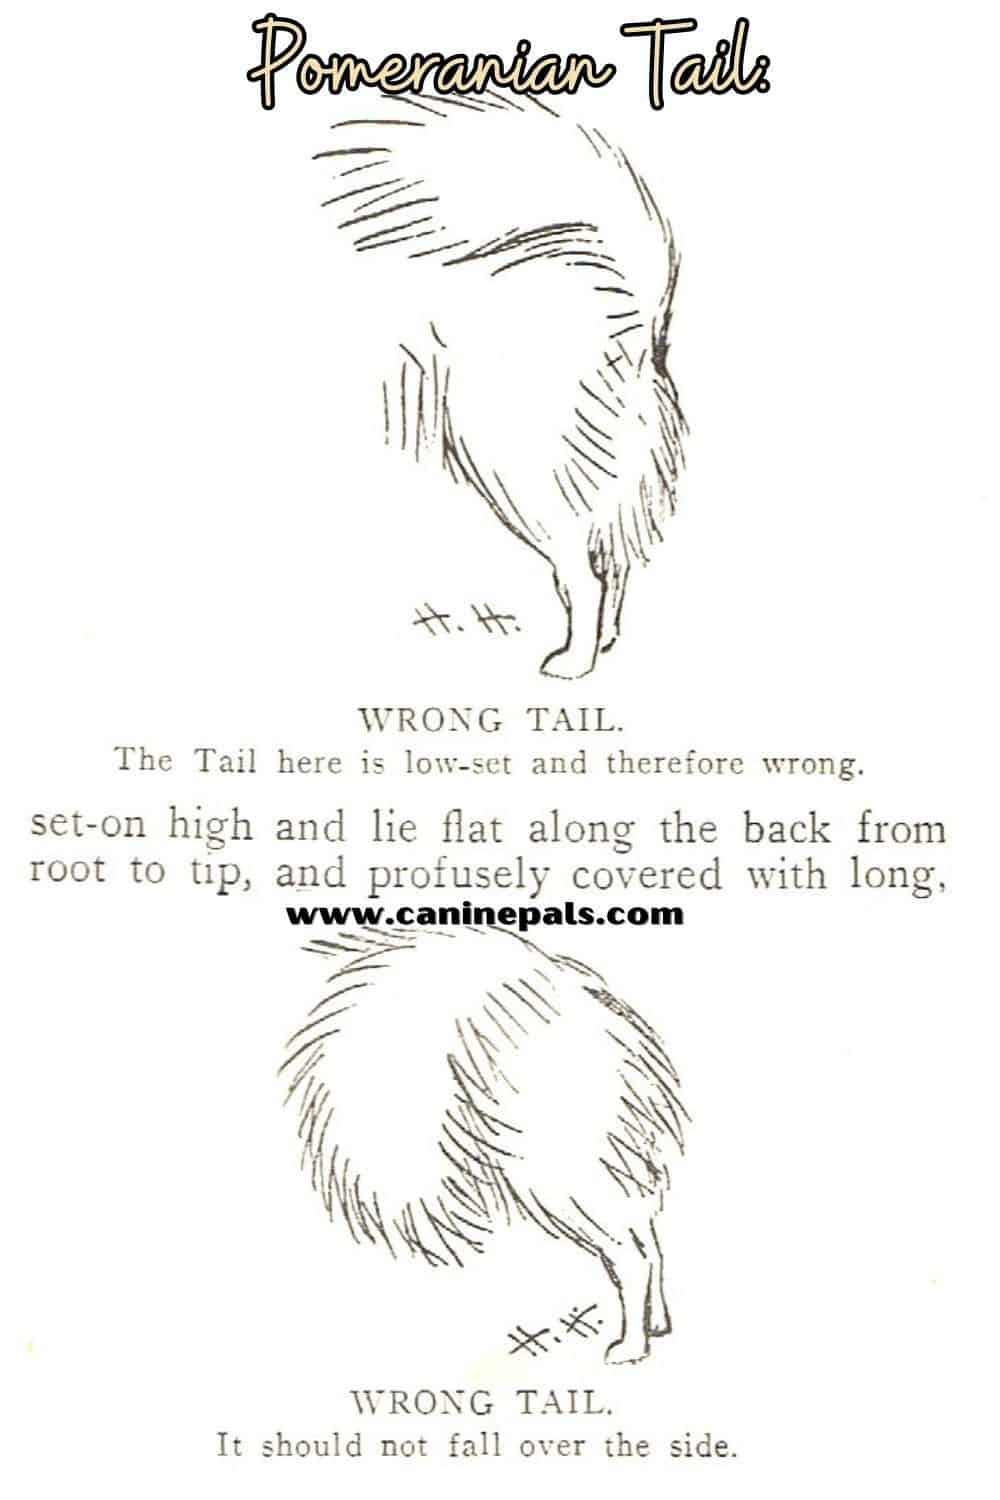 Pomeranian Tail